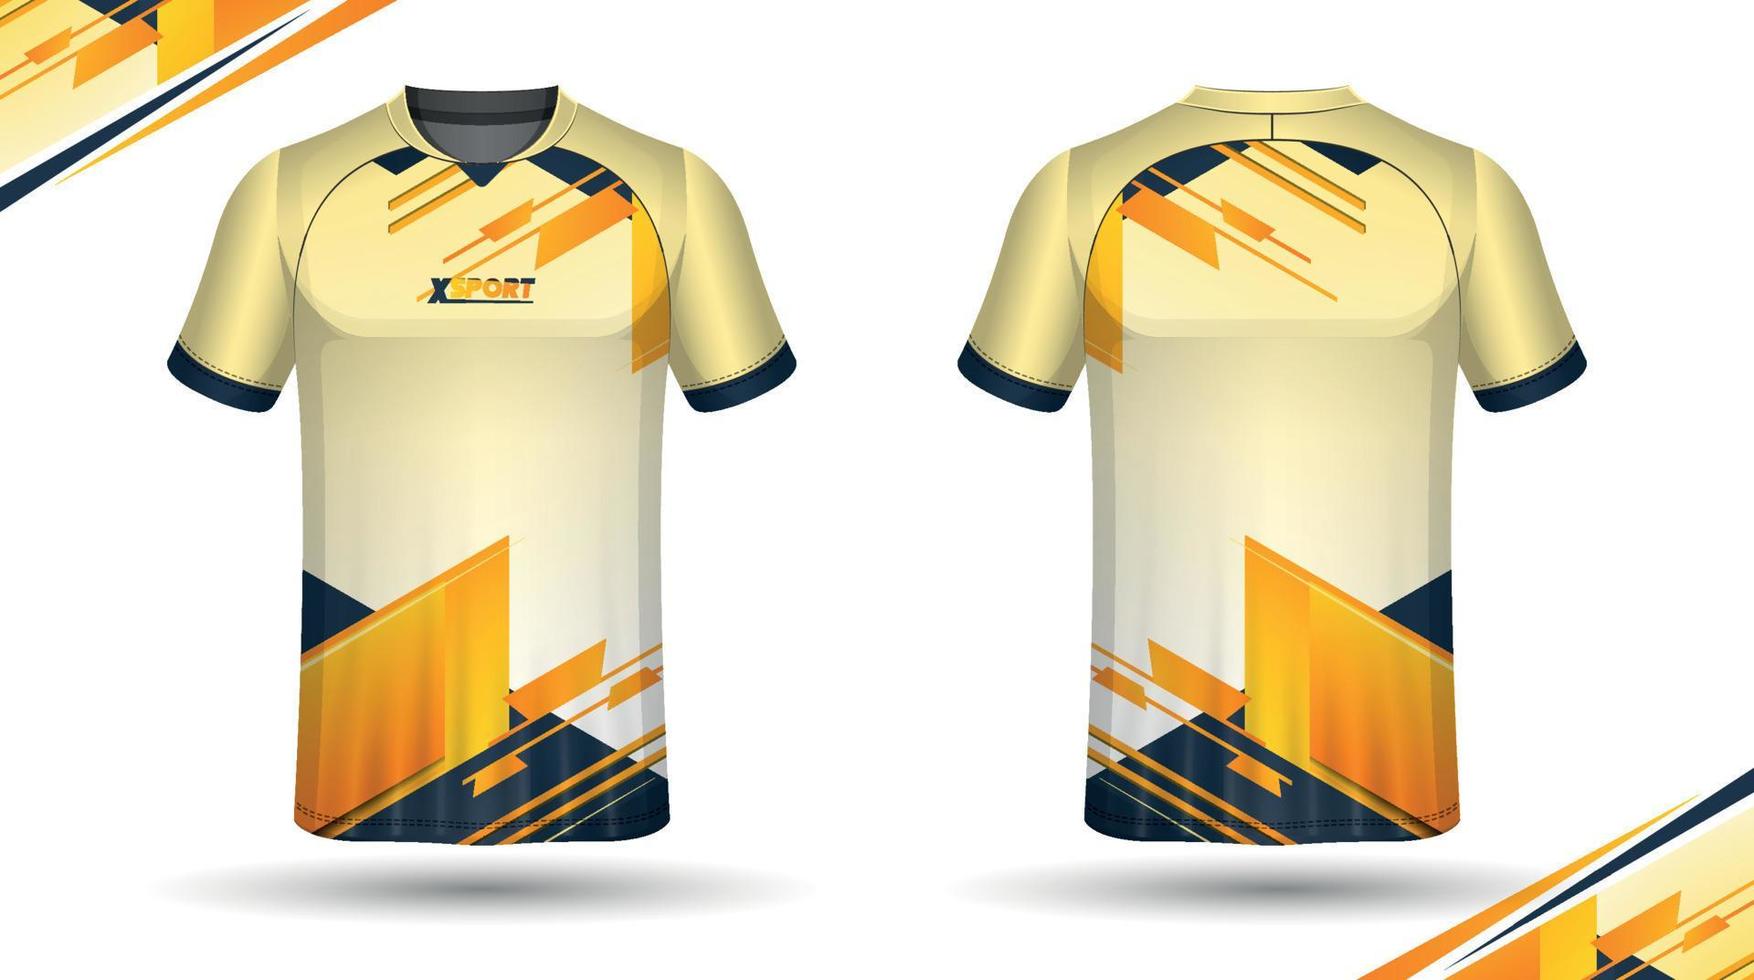 fotboll jersey design för sublimering, sport t skjorta design vektor